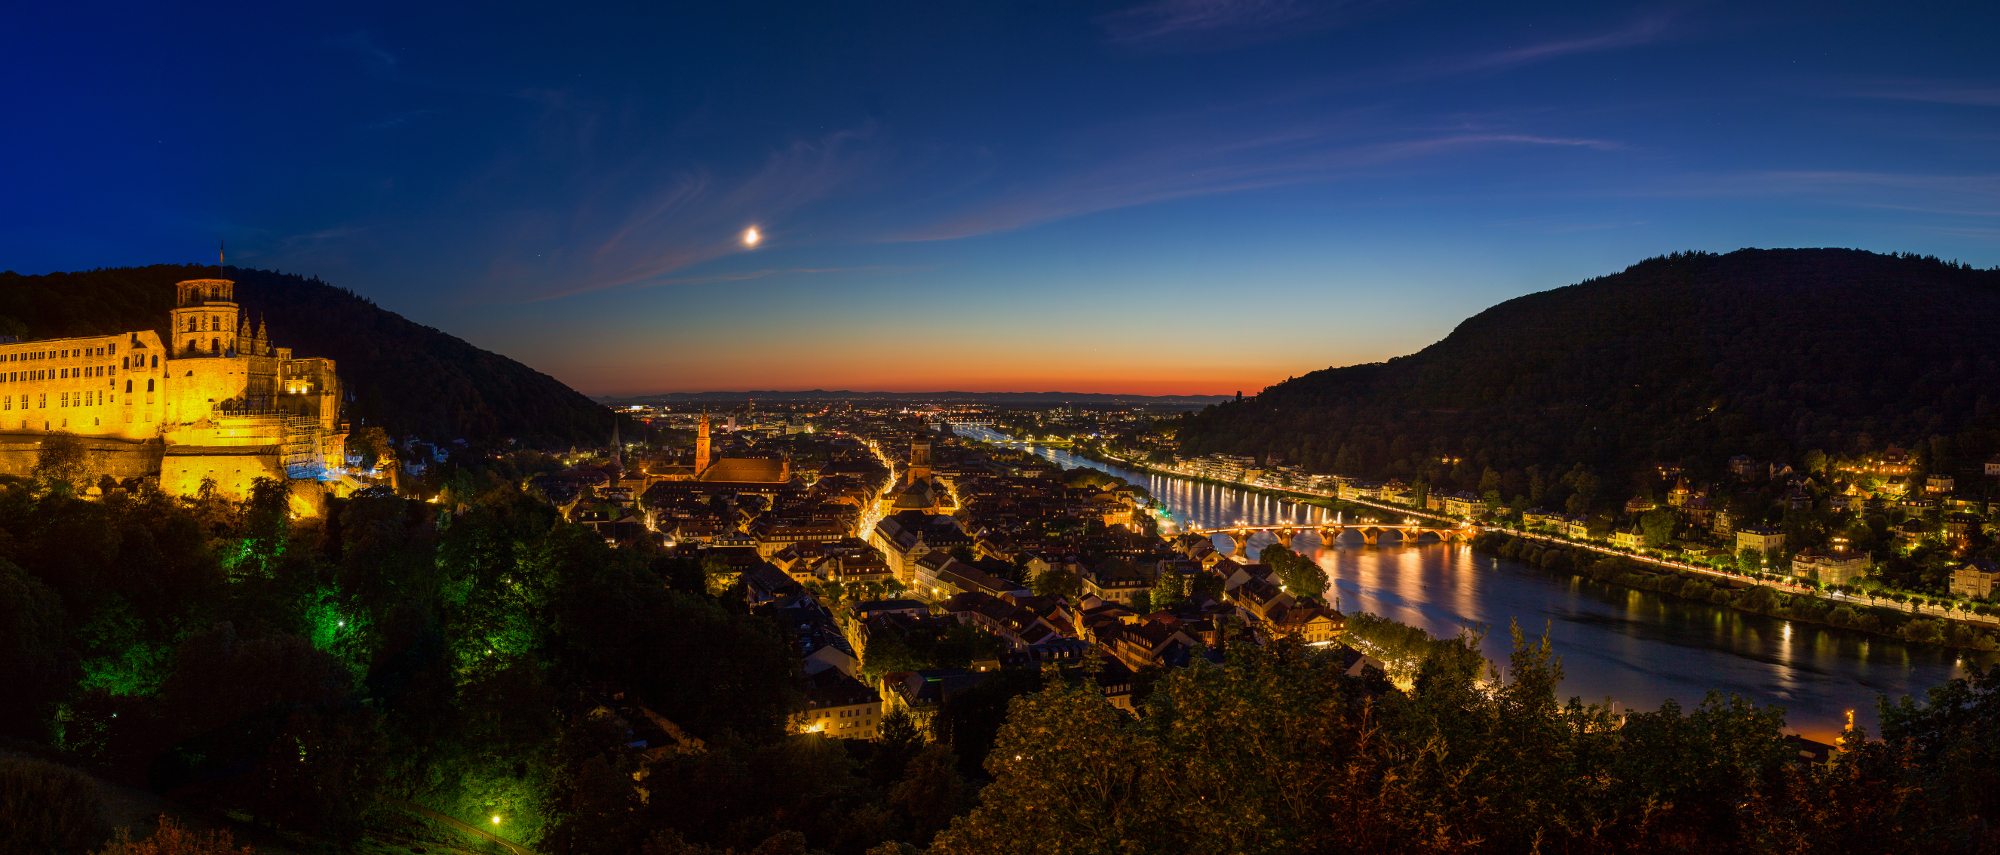 Auch bei Nacht wunderschön: Der Blick auf das erleuchtete Heidelberg.